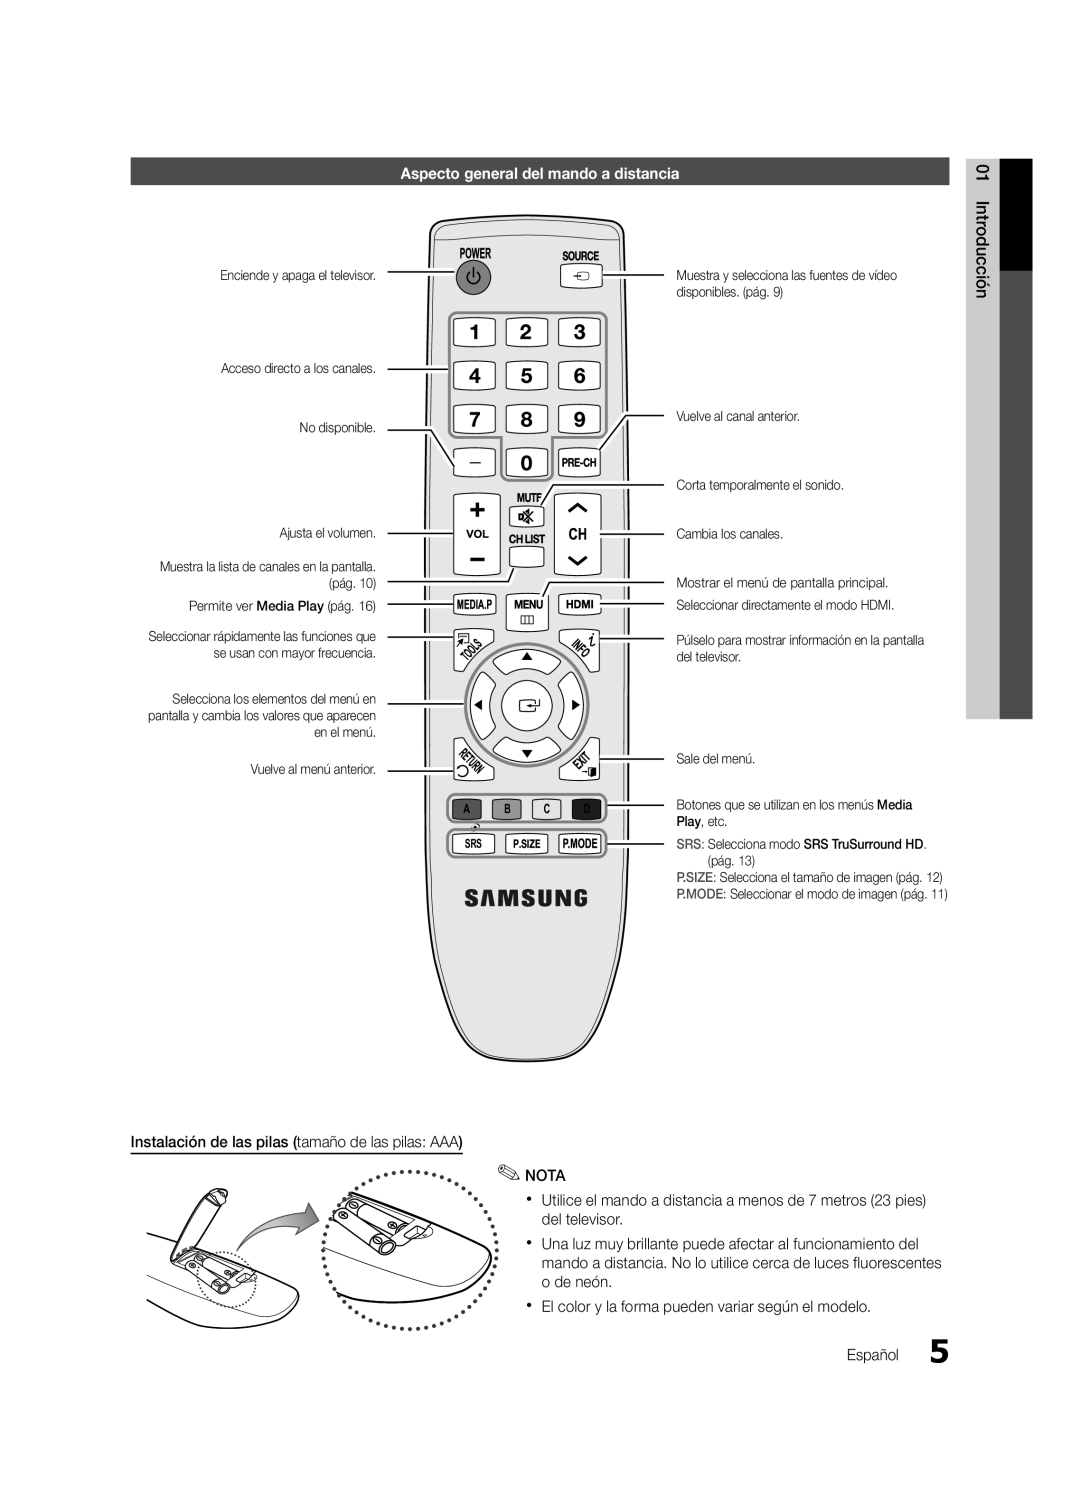 Samsung UN19D4003, UN22D5003 user manual Aspecto general del mando a distancia, Sale del menú, Play, etc 